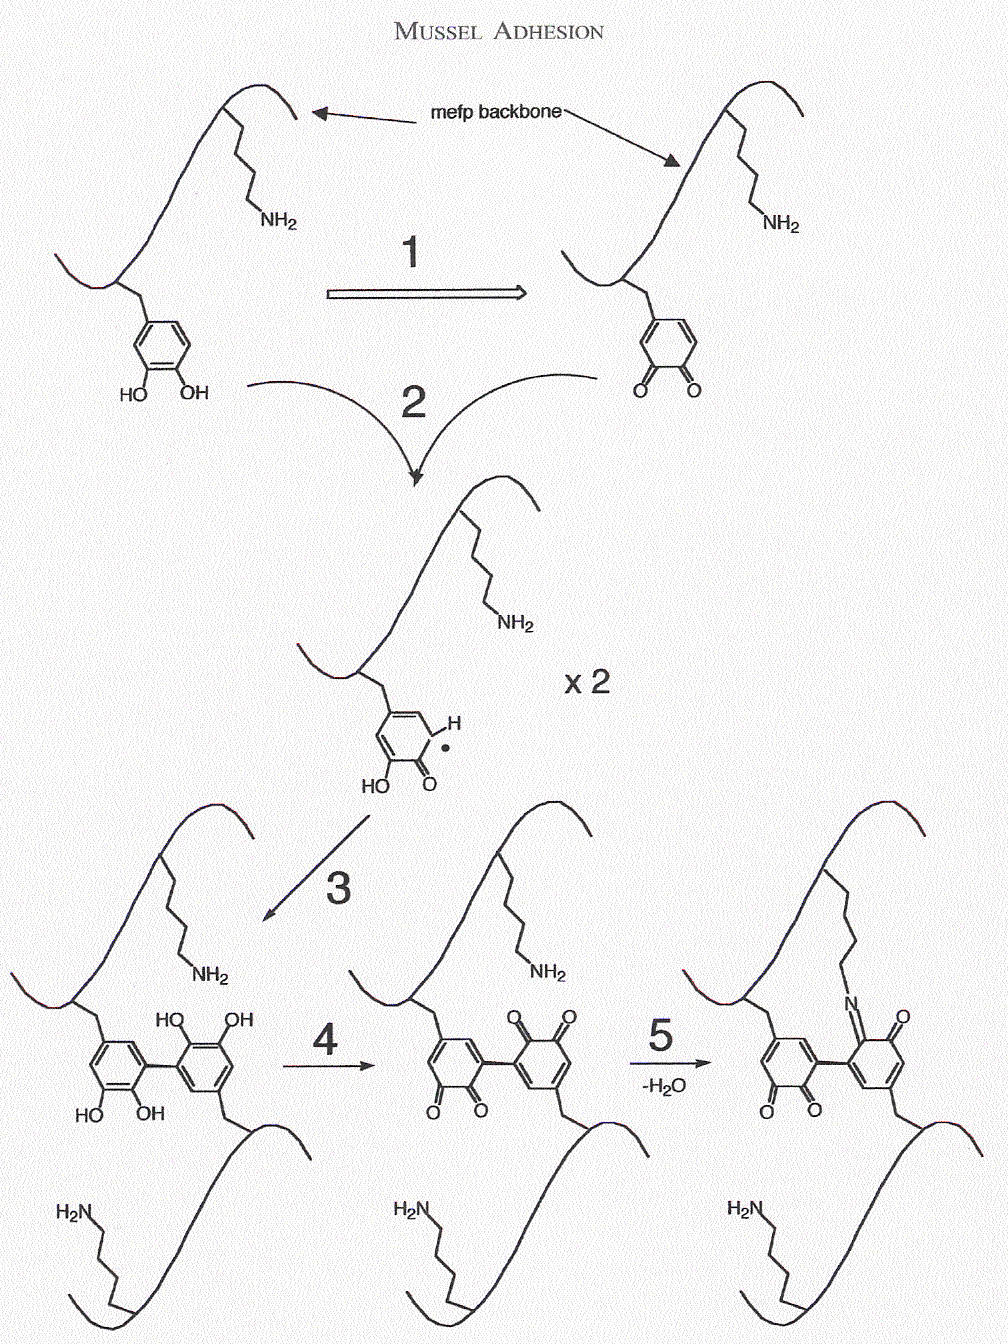 διυδροξυ φαινυλαλανίνη: Σημαντική για τον σχηματισμό Ομοιοπολικών συνδέσεων (covalent cross-links)